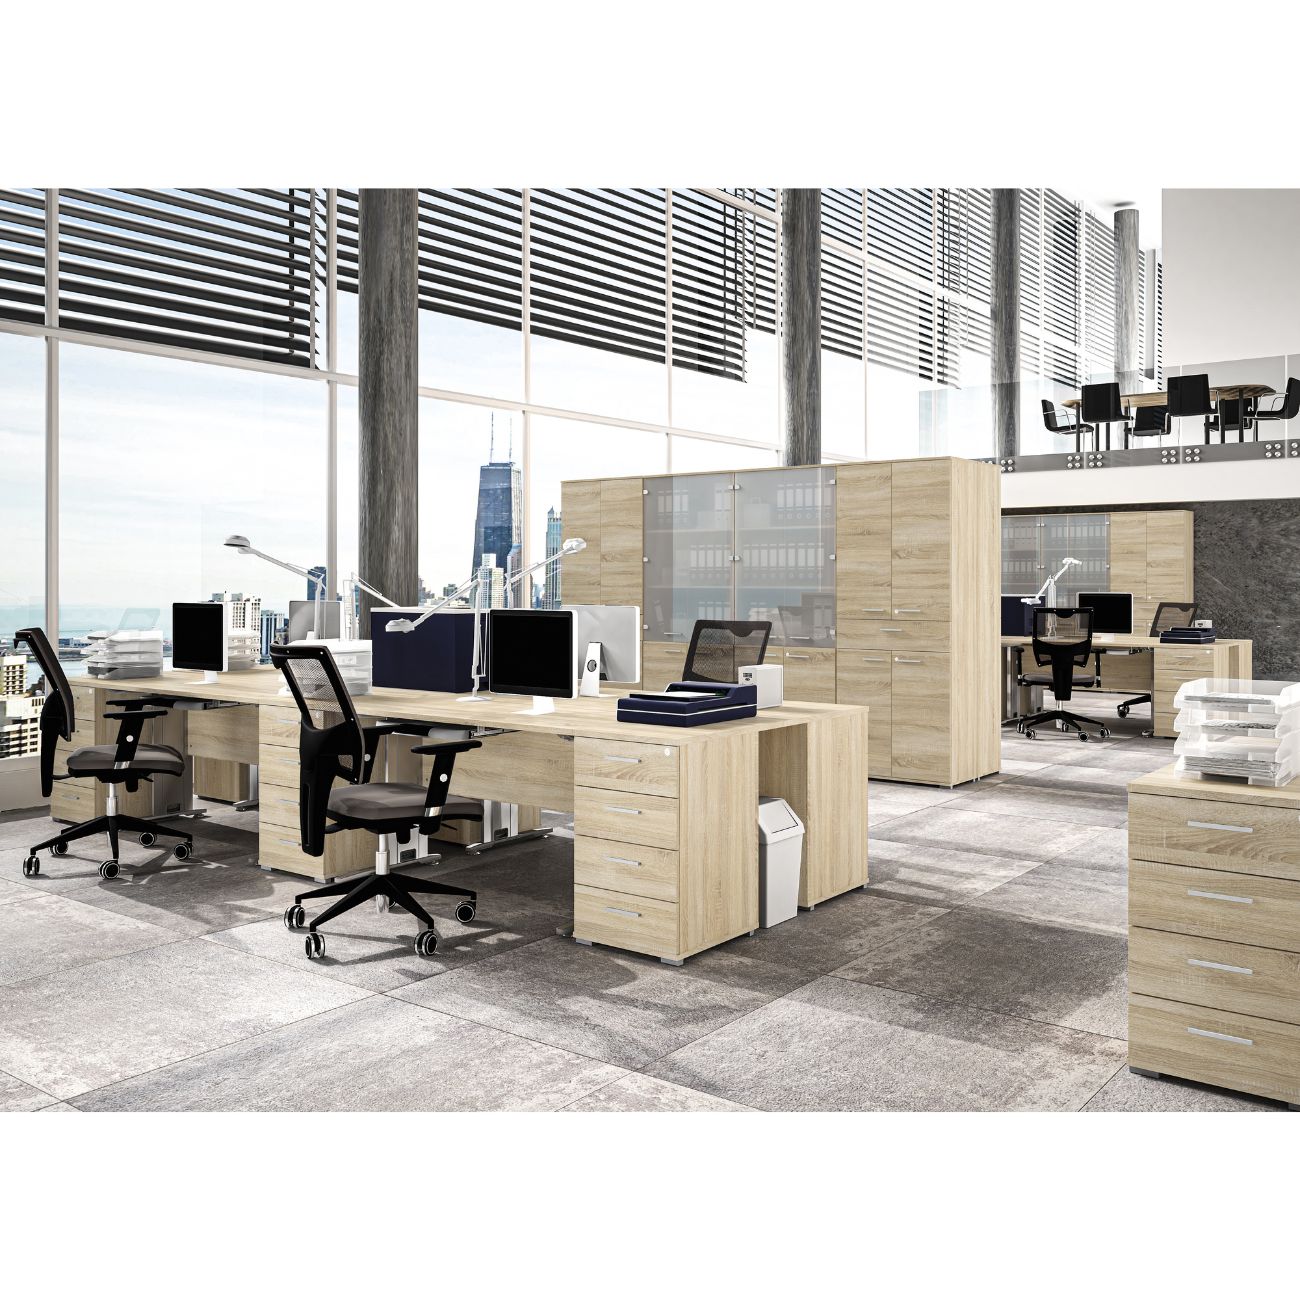 Zdjęcie przedstawiające przestrzeń biurową z meblami z kolekcji Office. Nowoczesne meble biurowe Office z szufladami oraz zamkiem na kluczyk